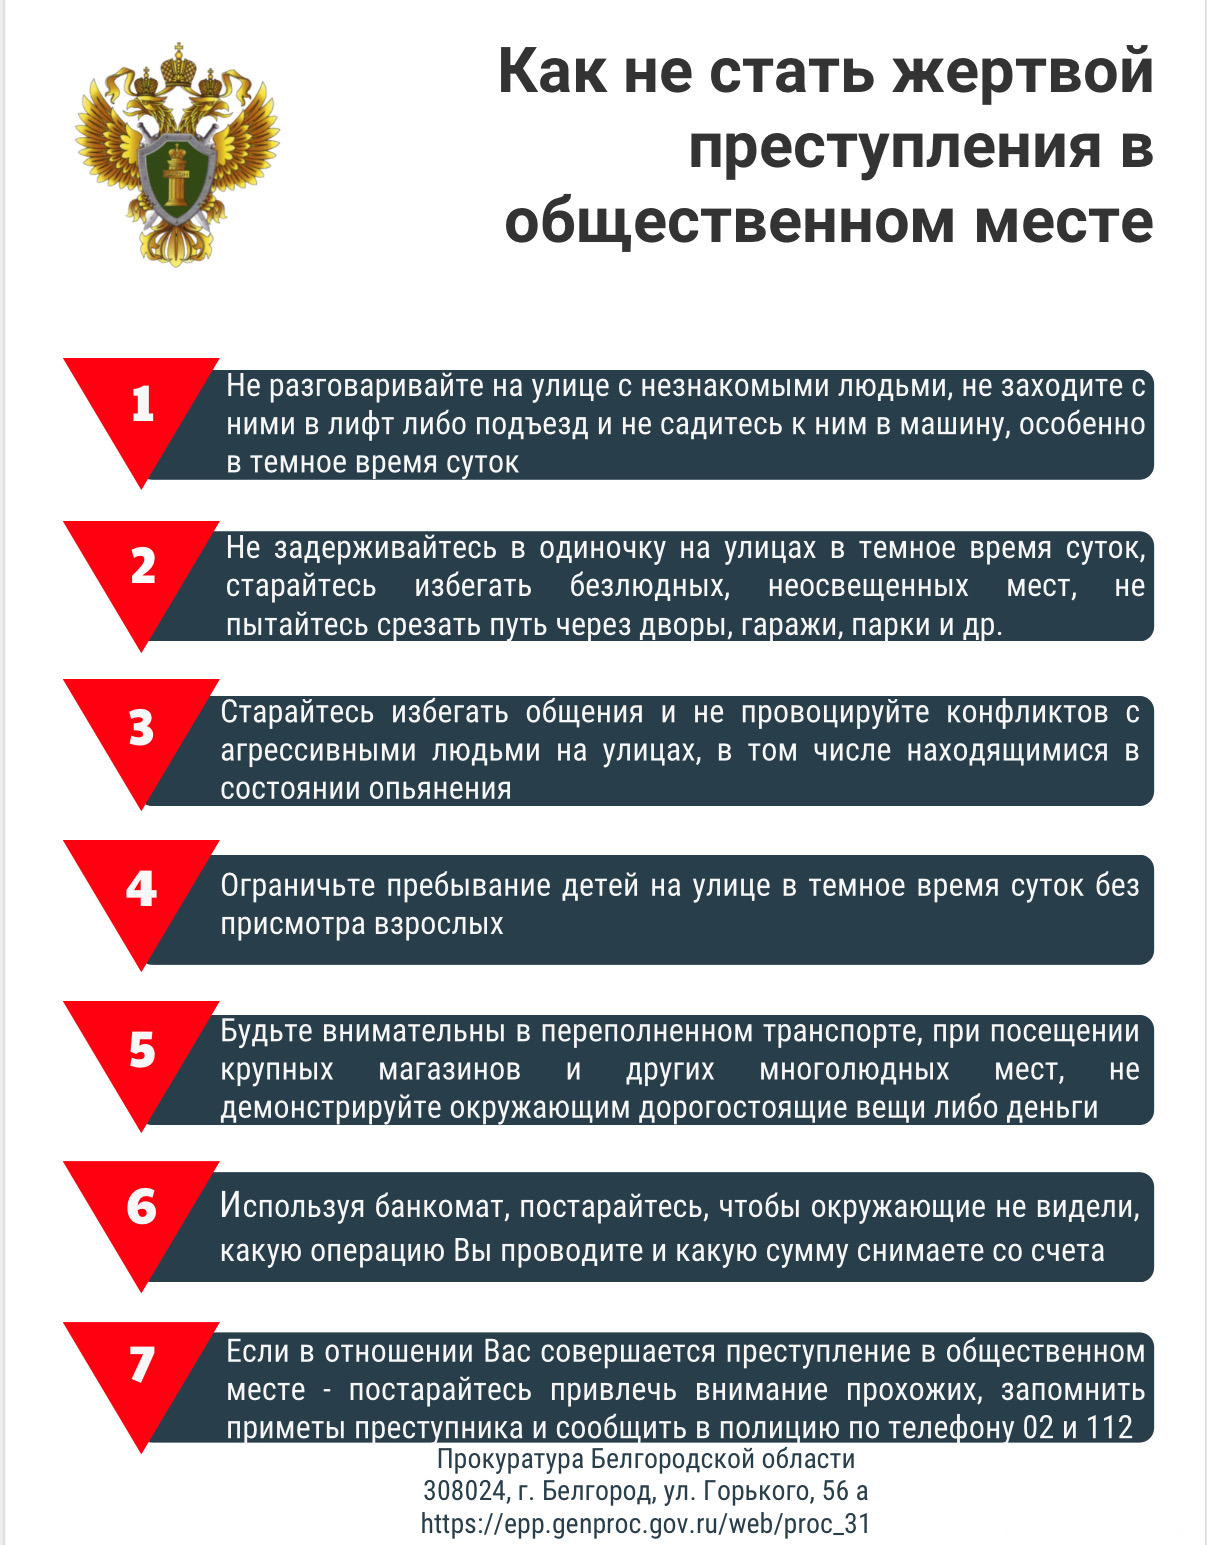 Прокуратура Белгородской области информирует.